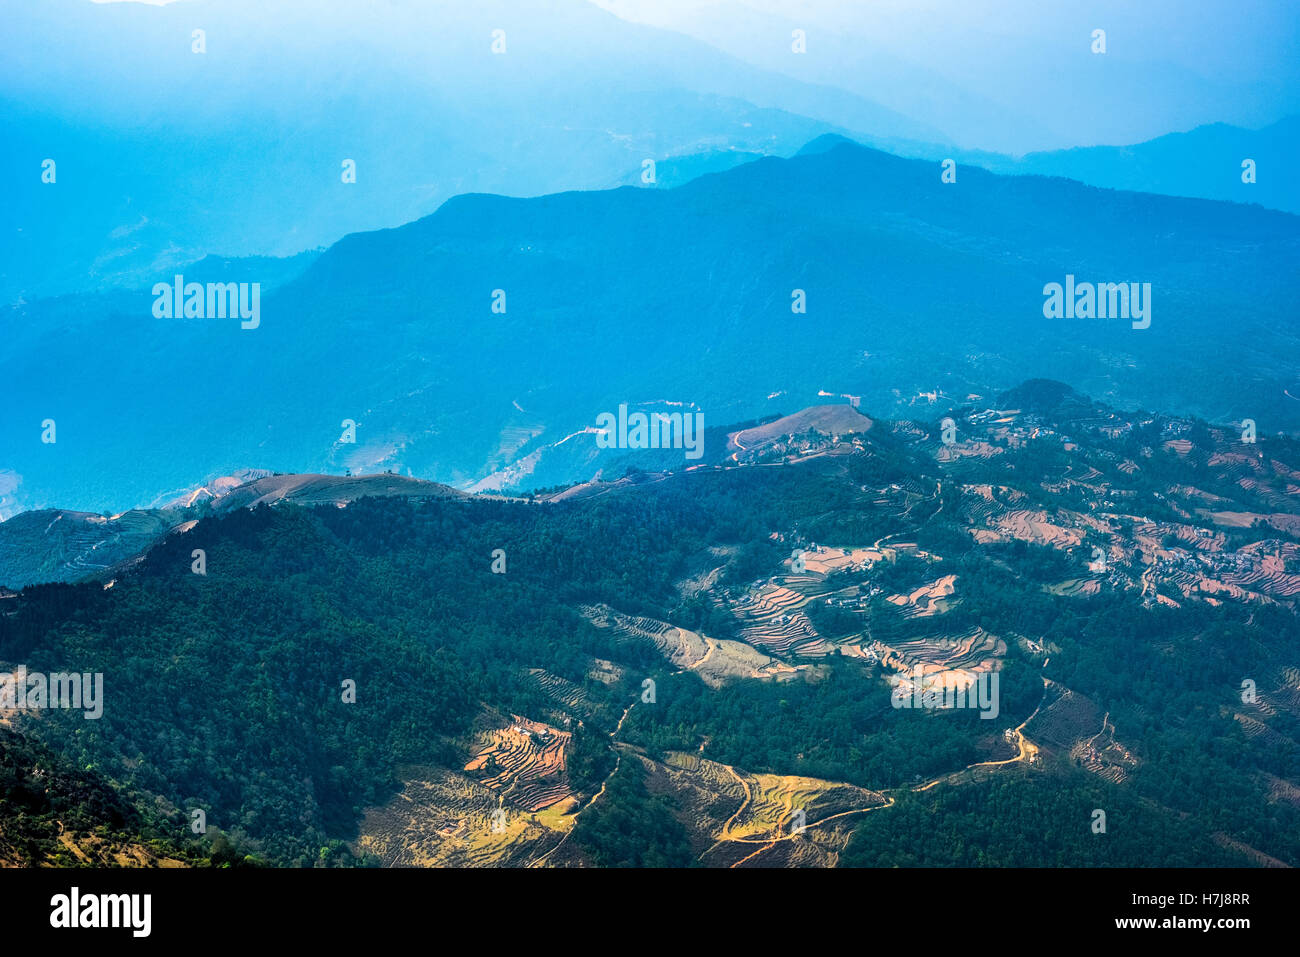 Vue aérienne de la région de Panchase dans l'ouest du Népal. Banque D'Images